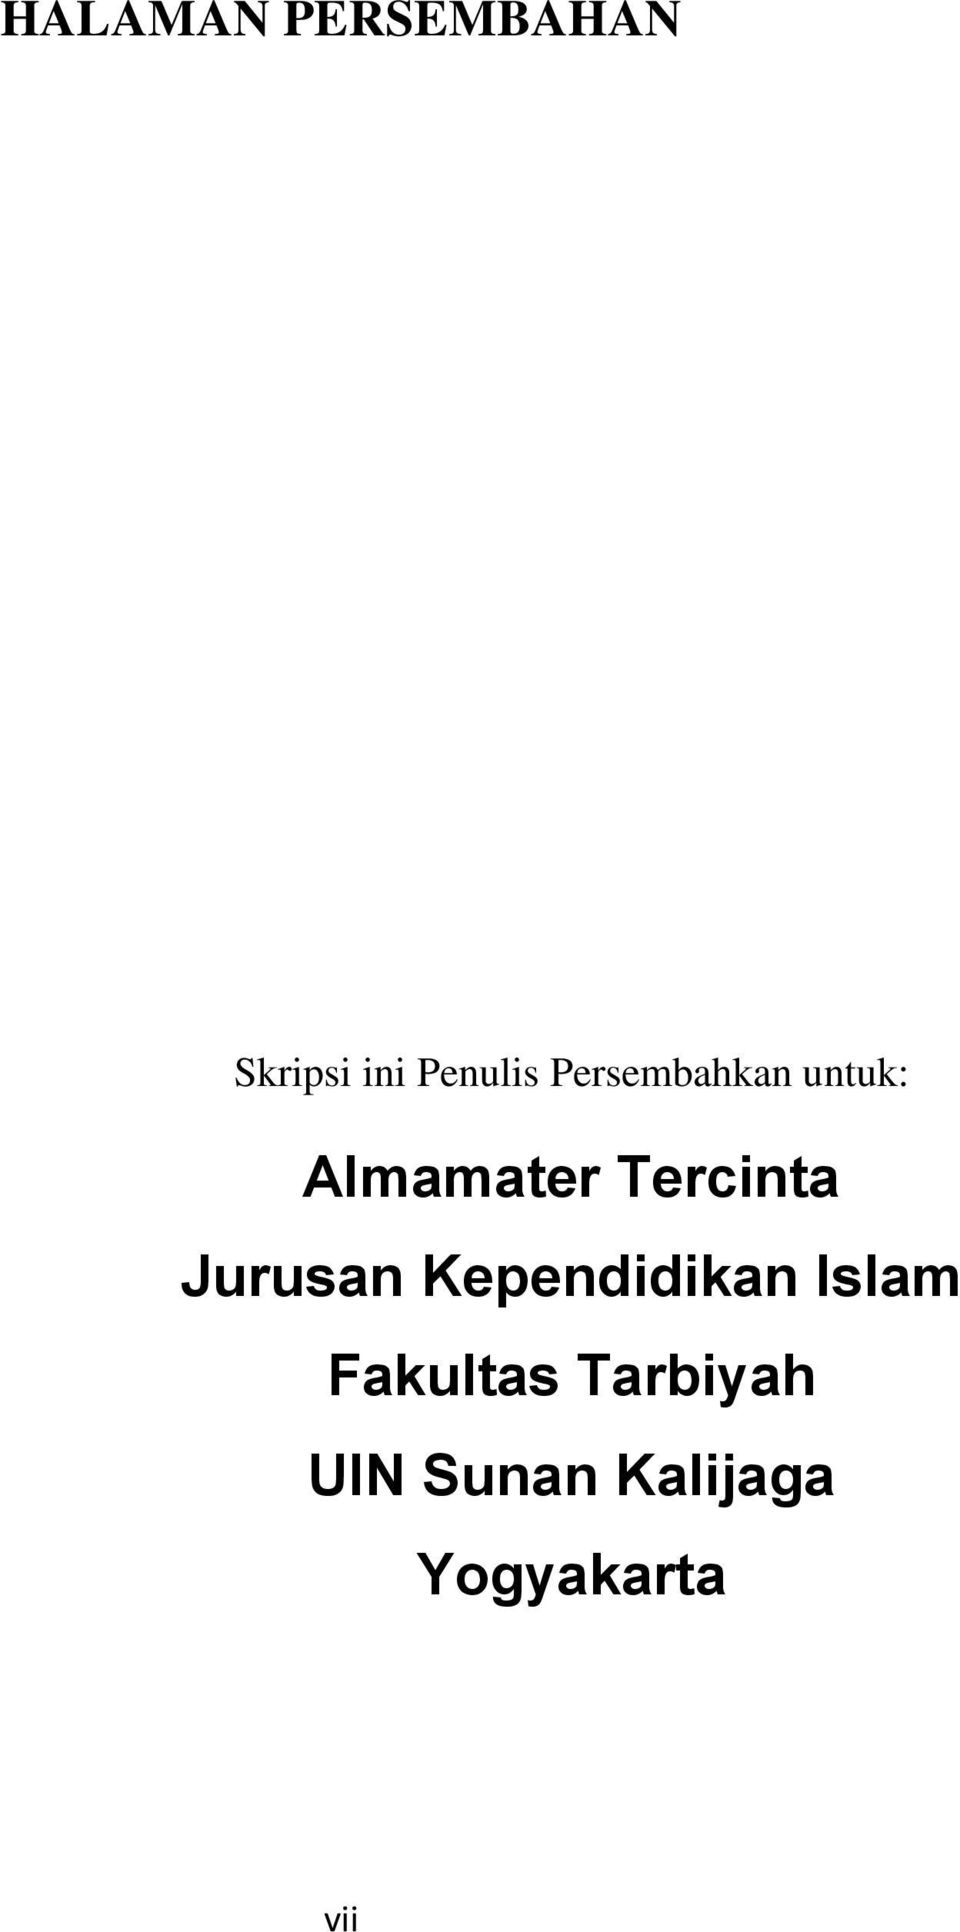 Jurusan Kependidikan Islam Fakultas